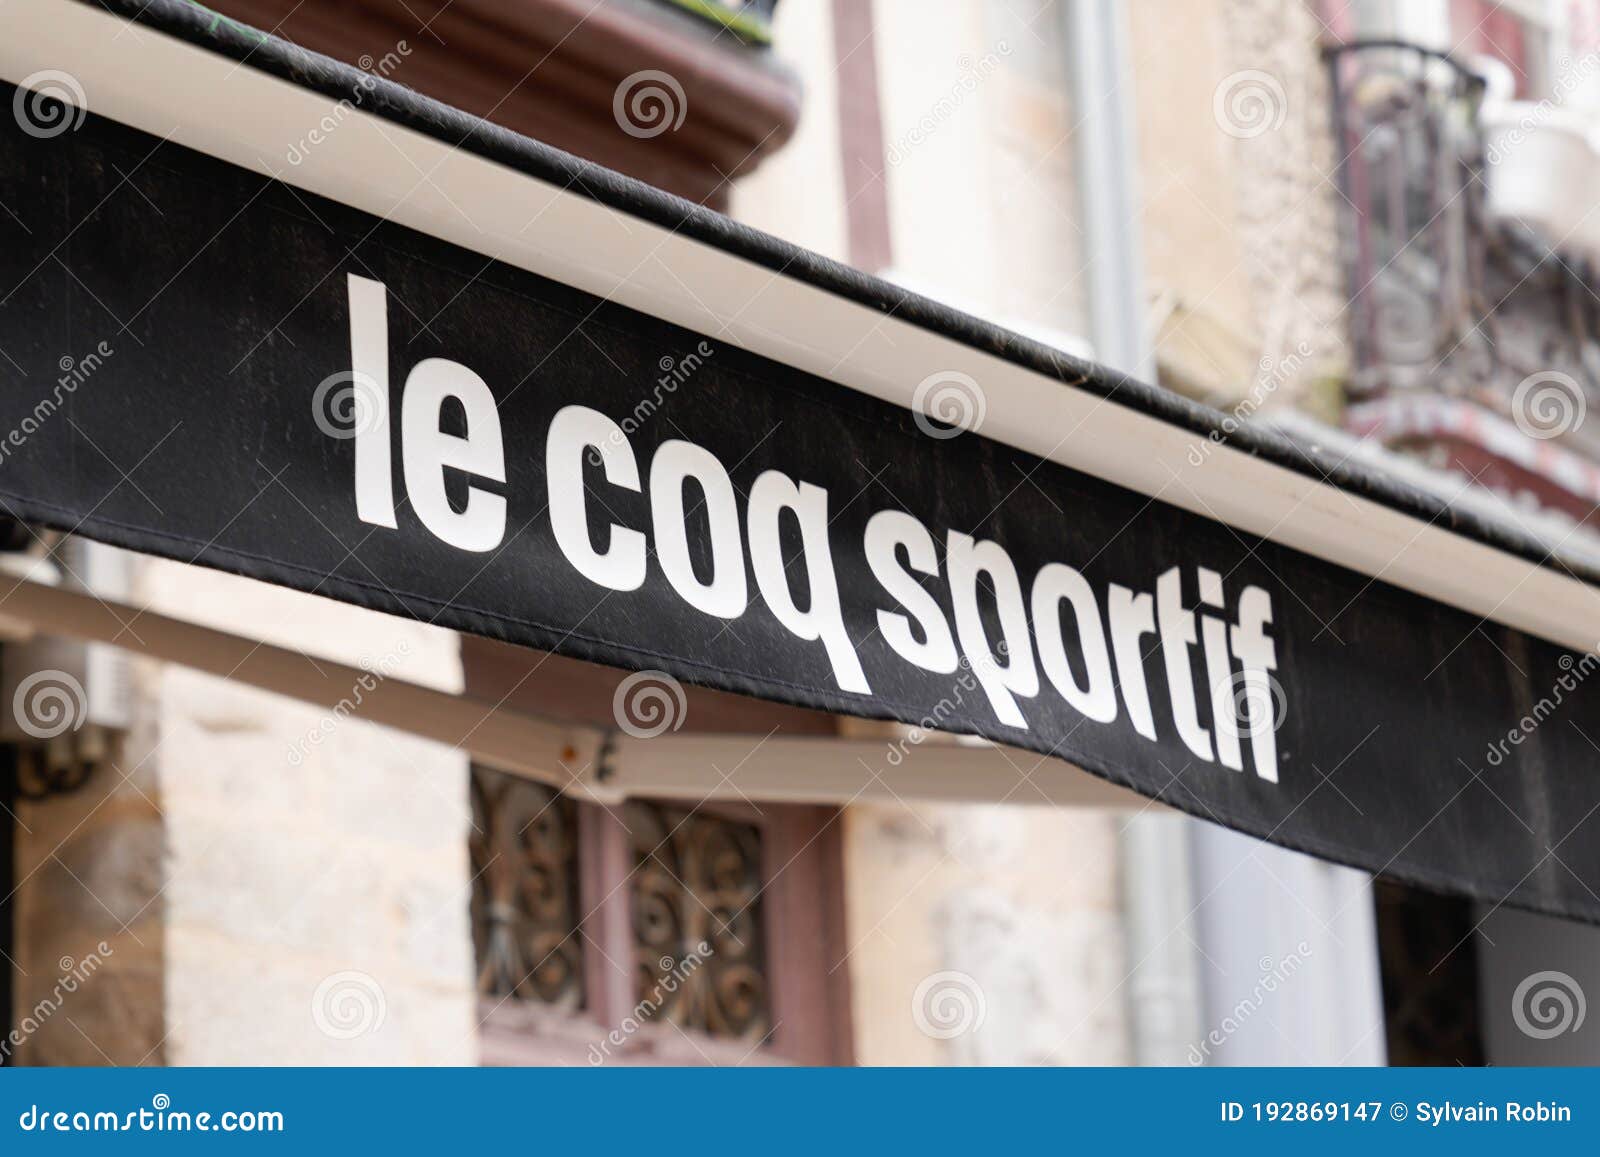 le coq sportif shop